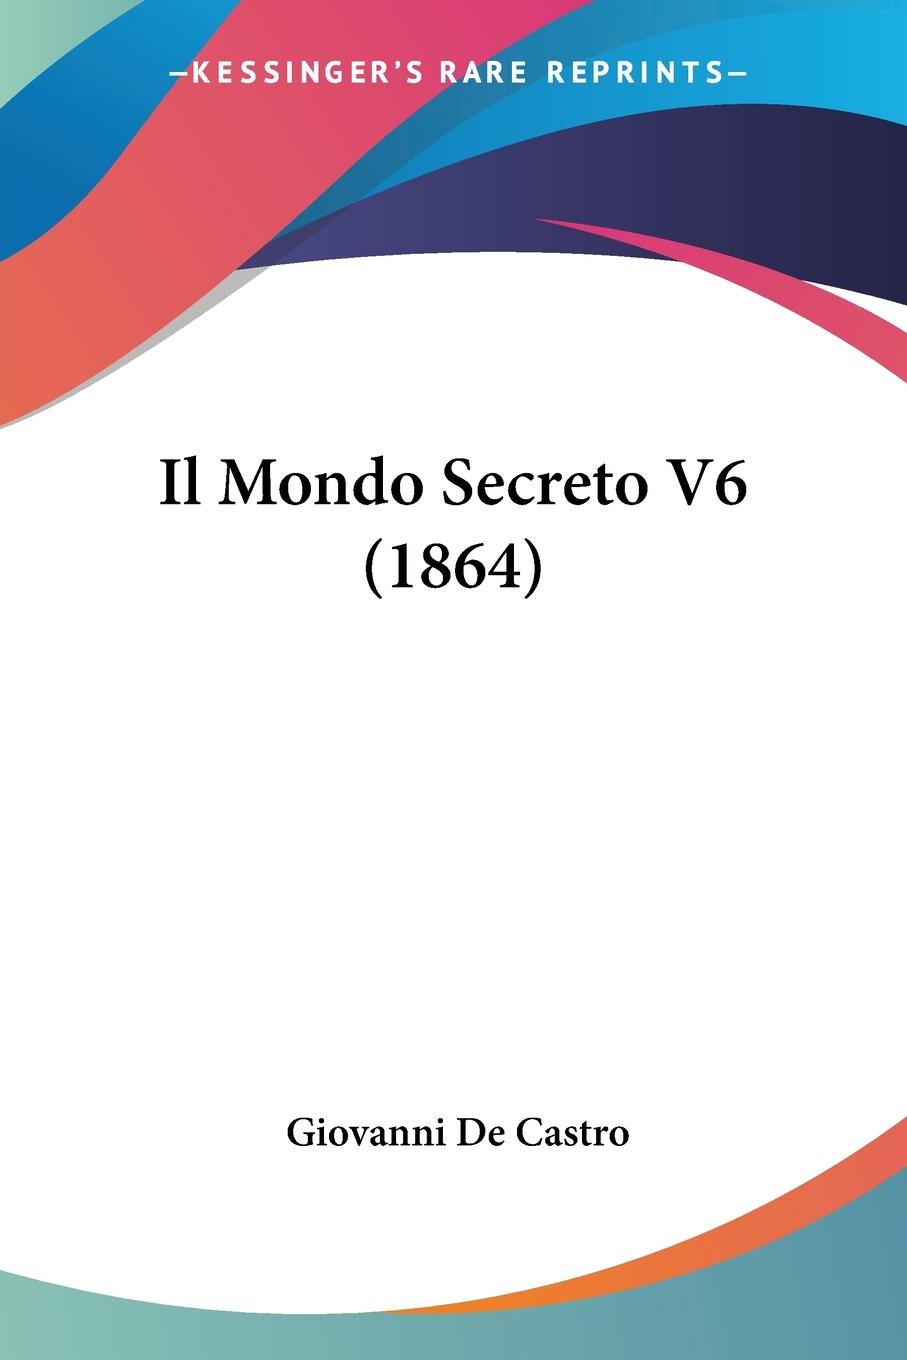 Il Mondo Secreto V6 (1864) - De Castro, Giovanni